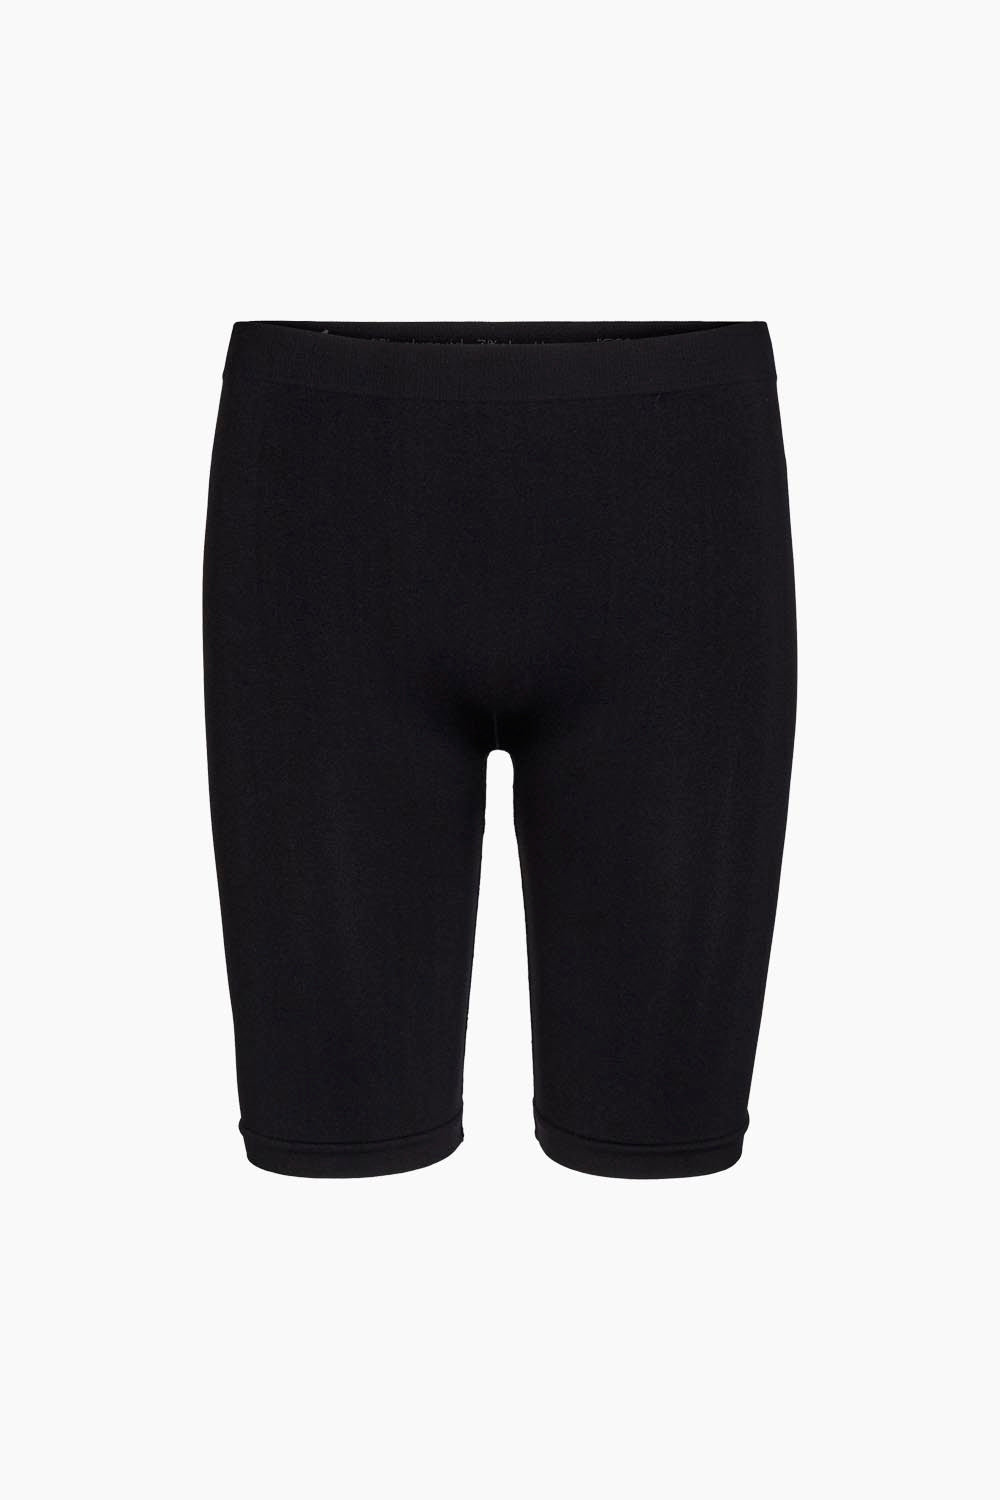 Ninna Shorts - Black - Liberté - BLACK XS/S